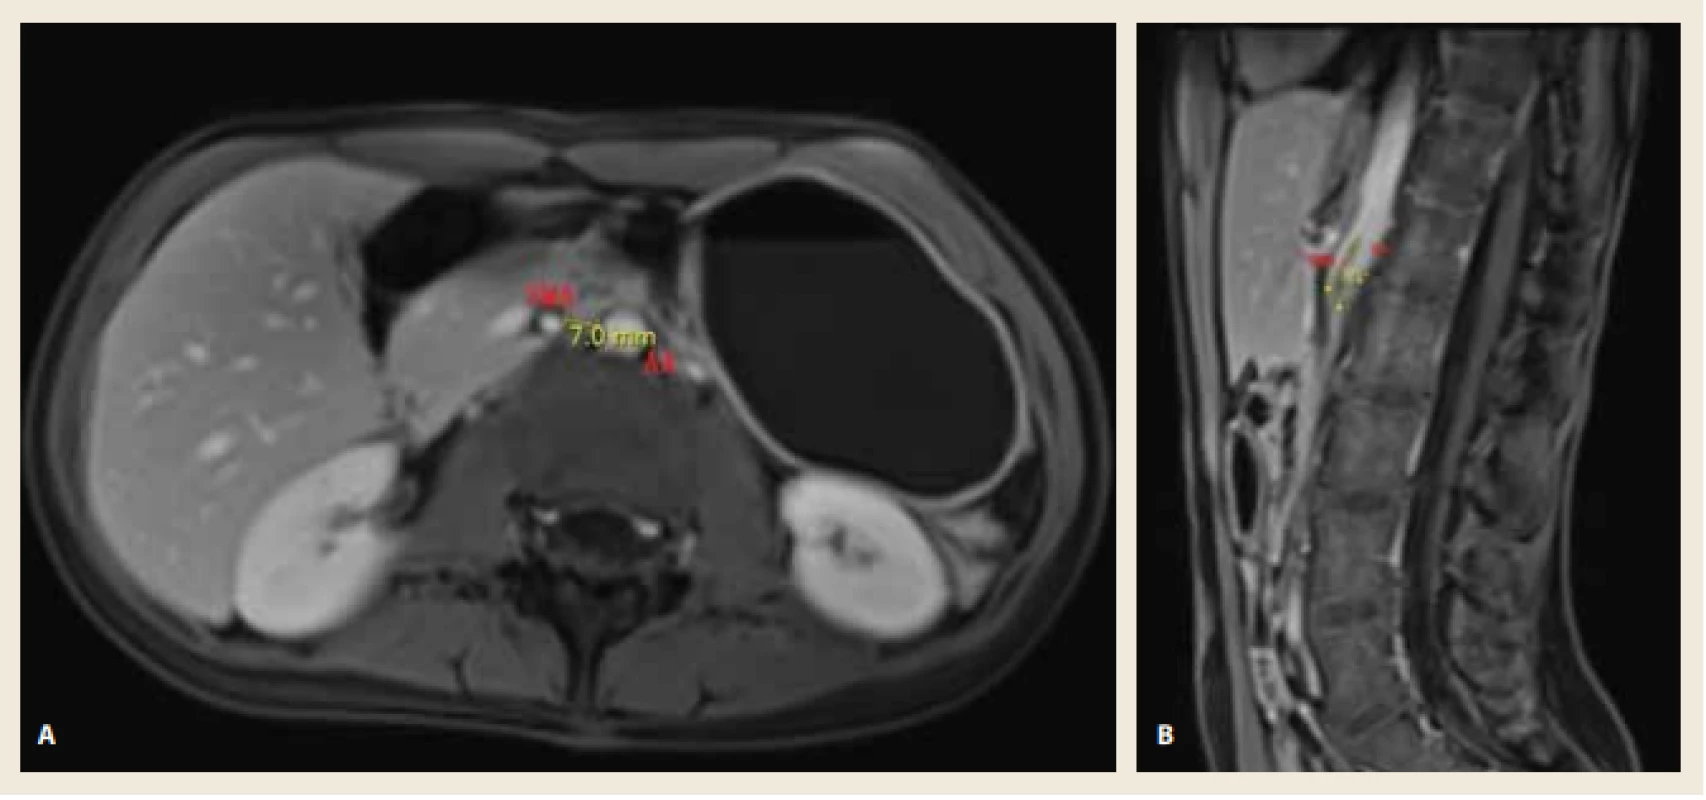 A. MR enterografie (PK T1 VIBE FS, transverzální rovina) s patrným snížením aortomezenterické vzdálenosti na 7 mm.<br>
Obr. 1B. MR enterografie (PK T1 VIBE FS, sagitální rovina) s patrným snížením aortomezenterického úhlu na 14°. <br>
Fig.1A. MR Enterography (PK T1 VIBE FS, axial view) shows the reduction of aortomesenteric distance to 7 mm.
Fig. 1B. MR Enterography (PK T1 VIBE FS, sagittal view) shows the reduction of aortomesenteric angle to 14. 